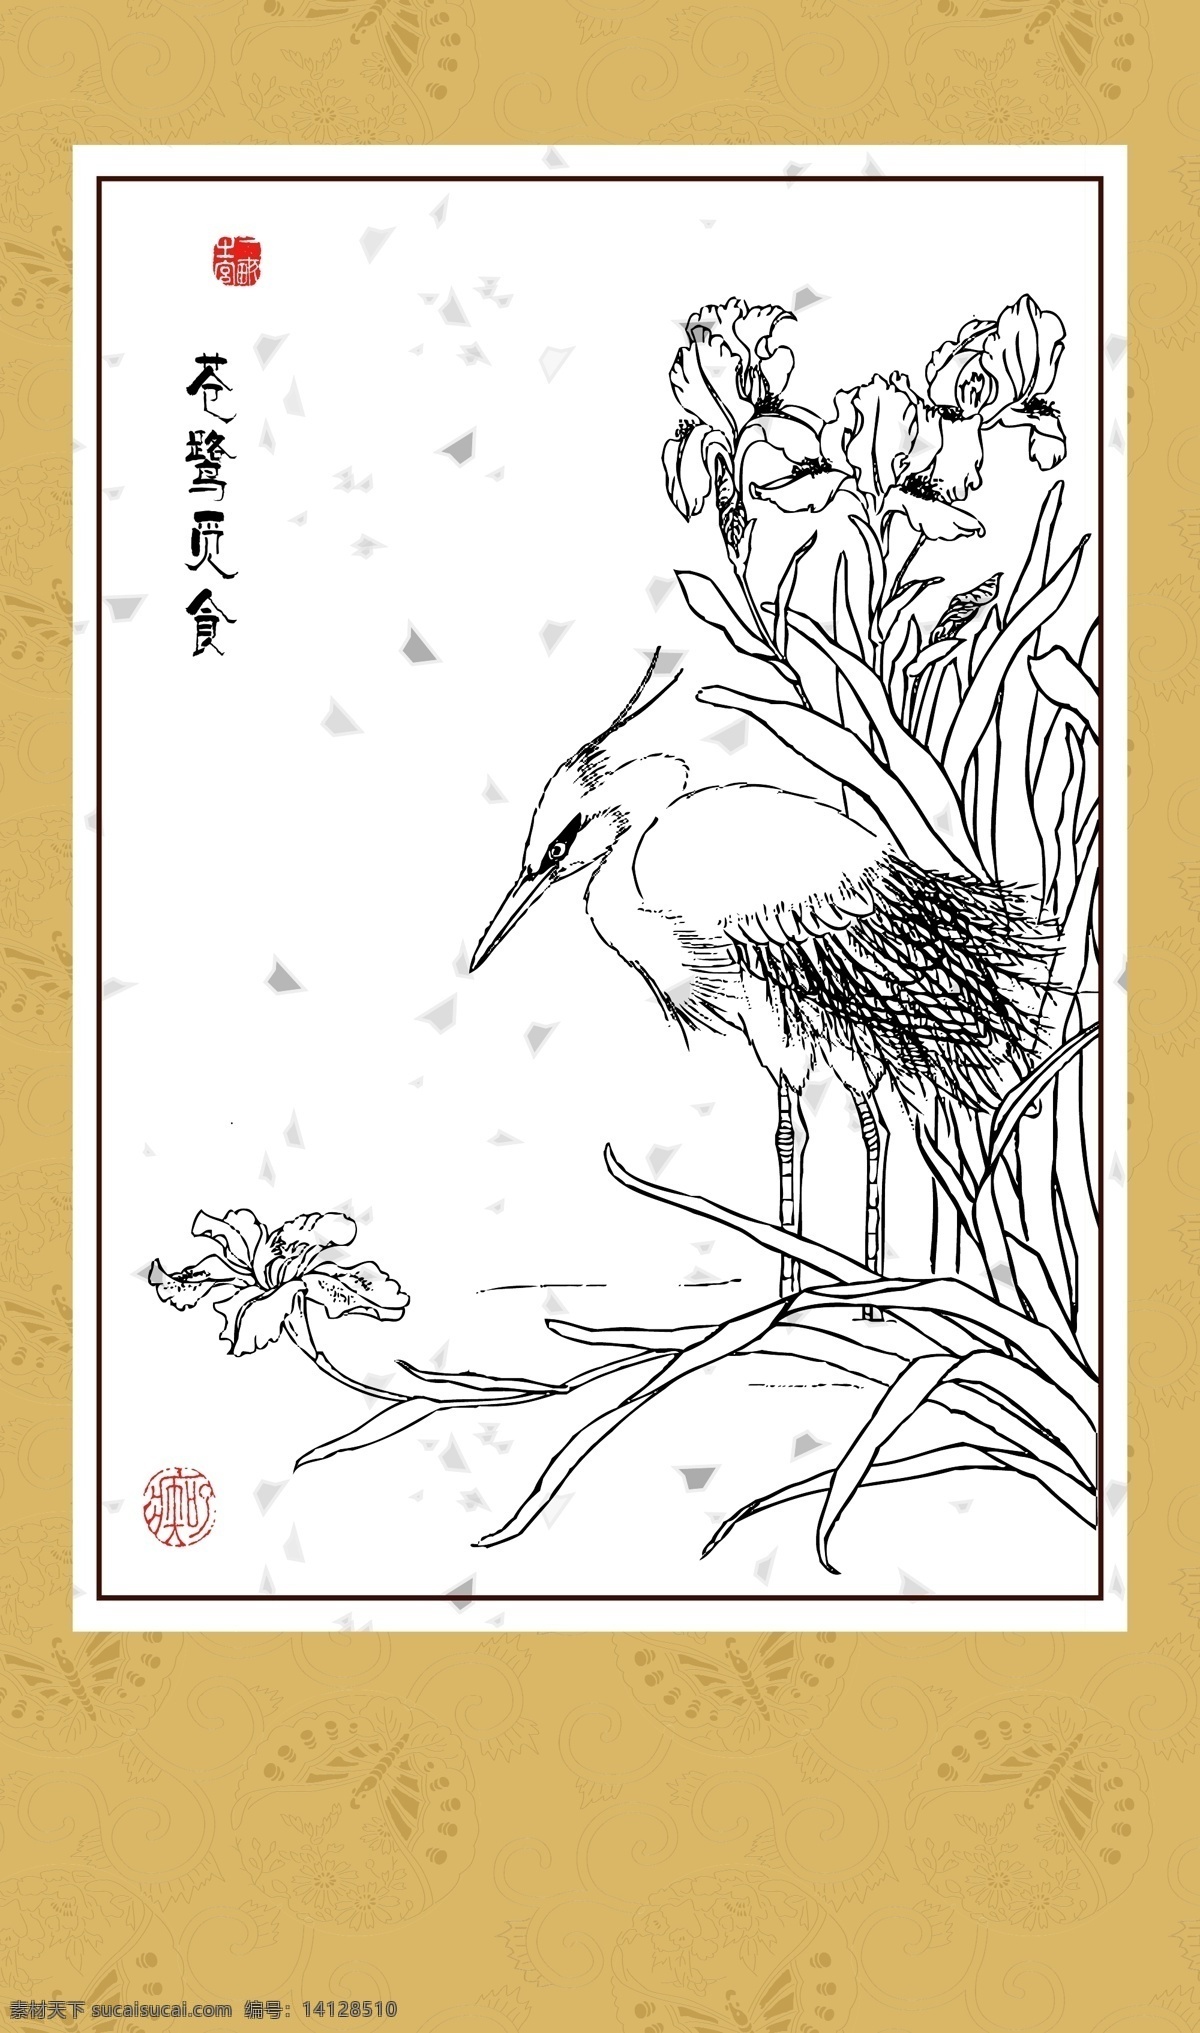 苍鹭觅食 工笔 白描 图案 绘画 古典 传统纹样 神话传说 苍鹭 传统文化 文化艺术 矢量